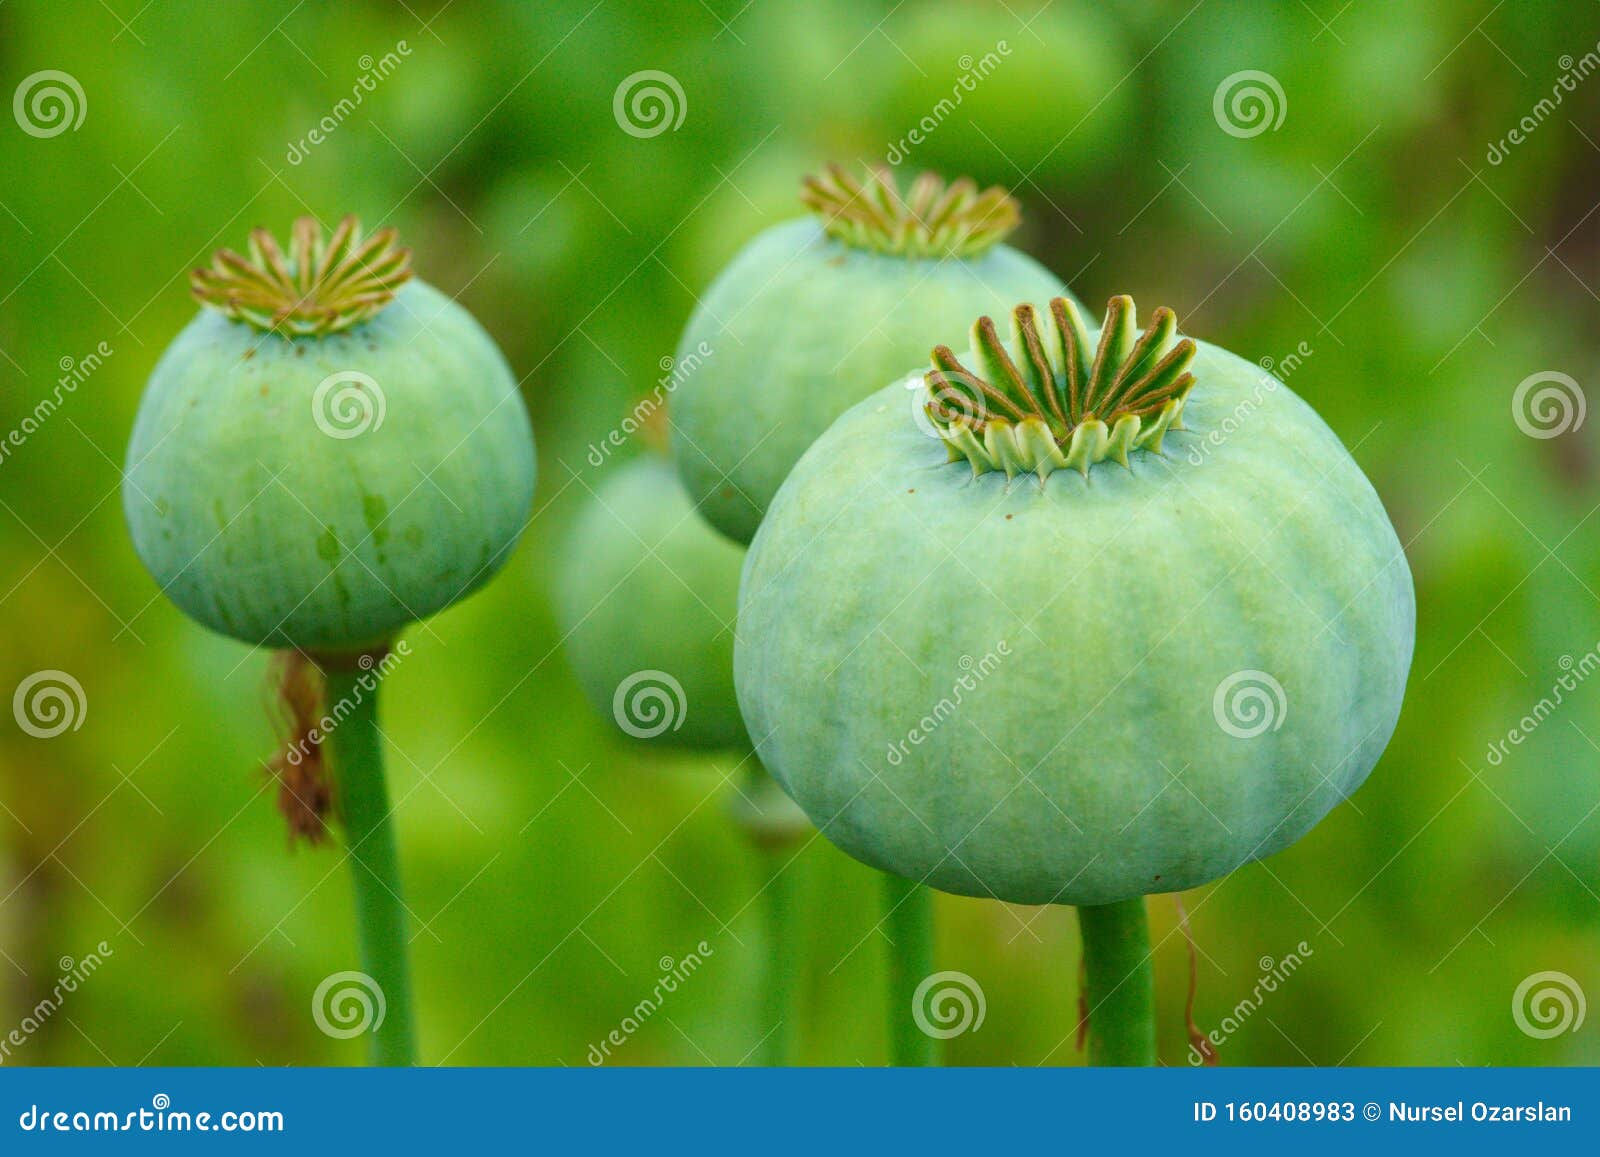 opium, poppy capsule